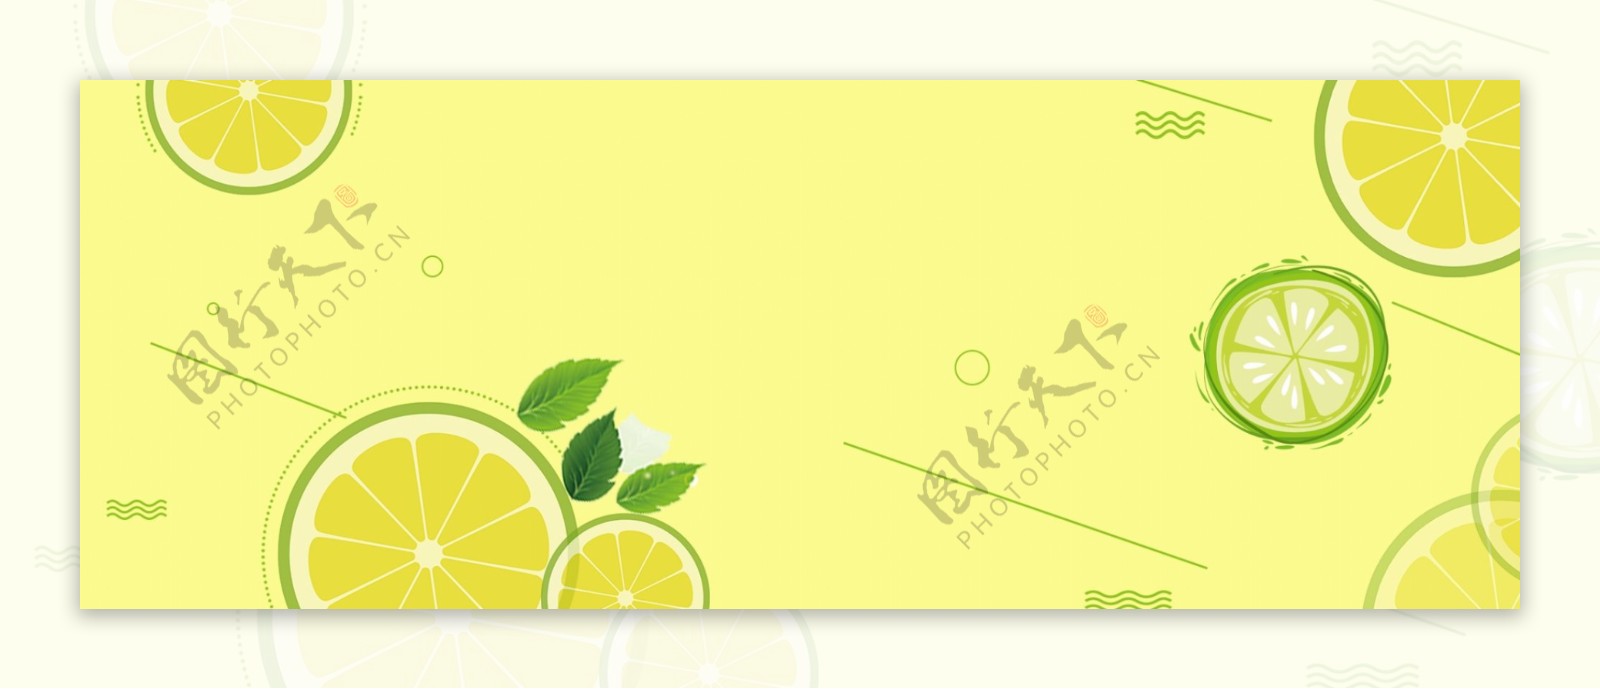 柠檬黄色banner